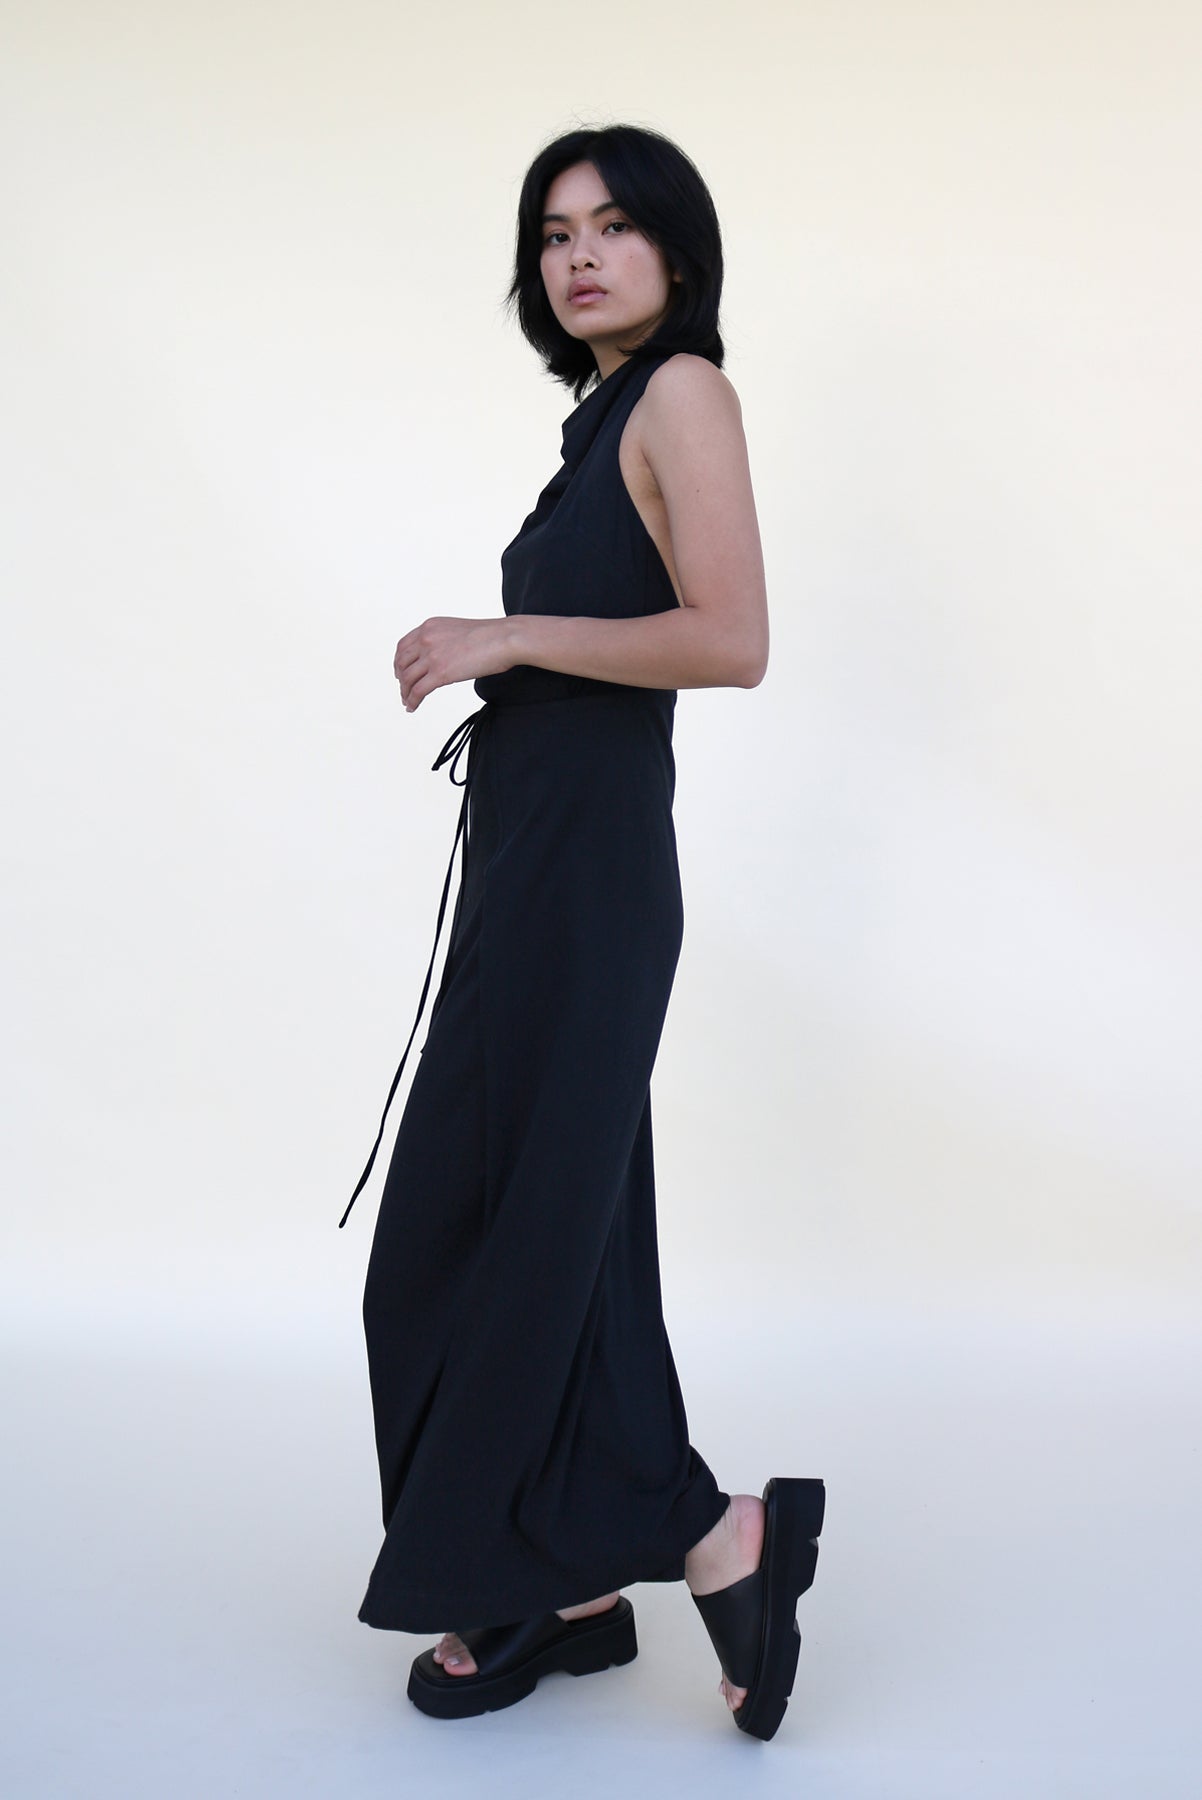 Demi Wrap Dress - Black